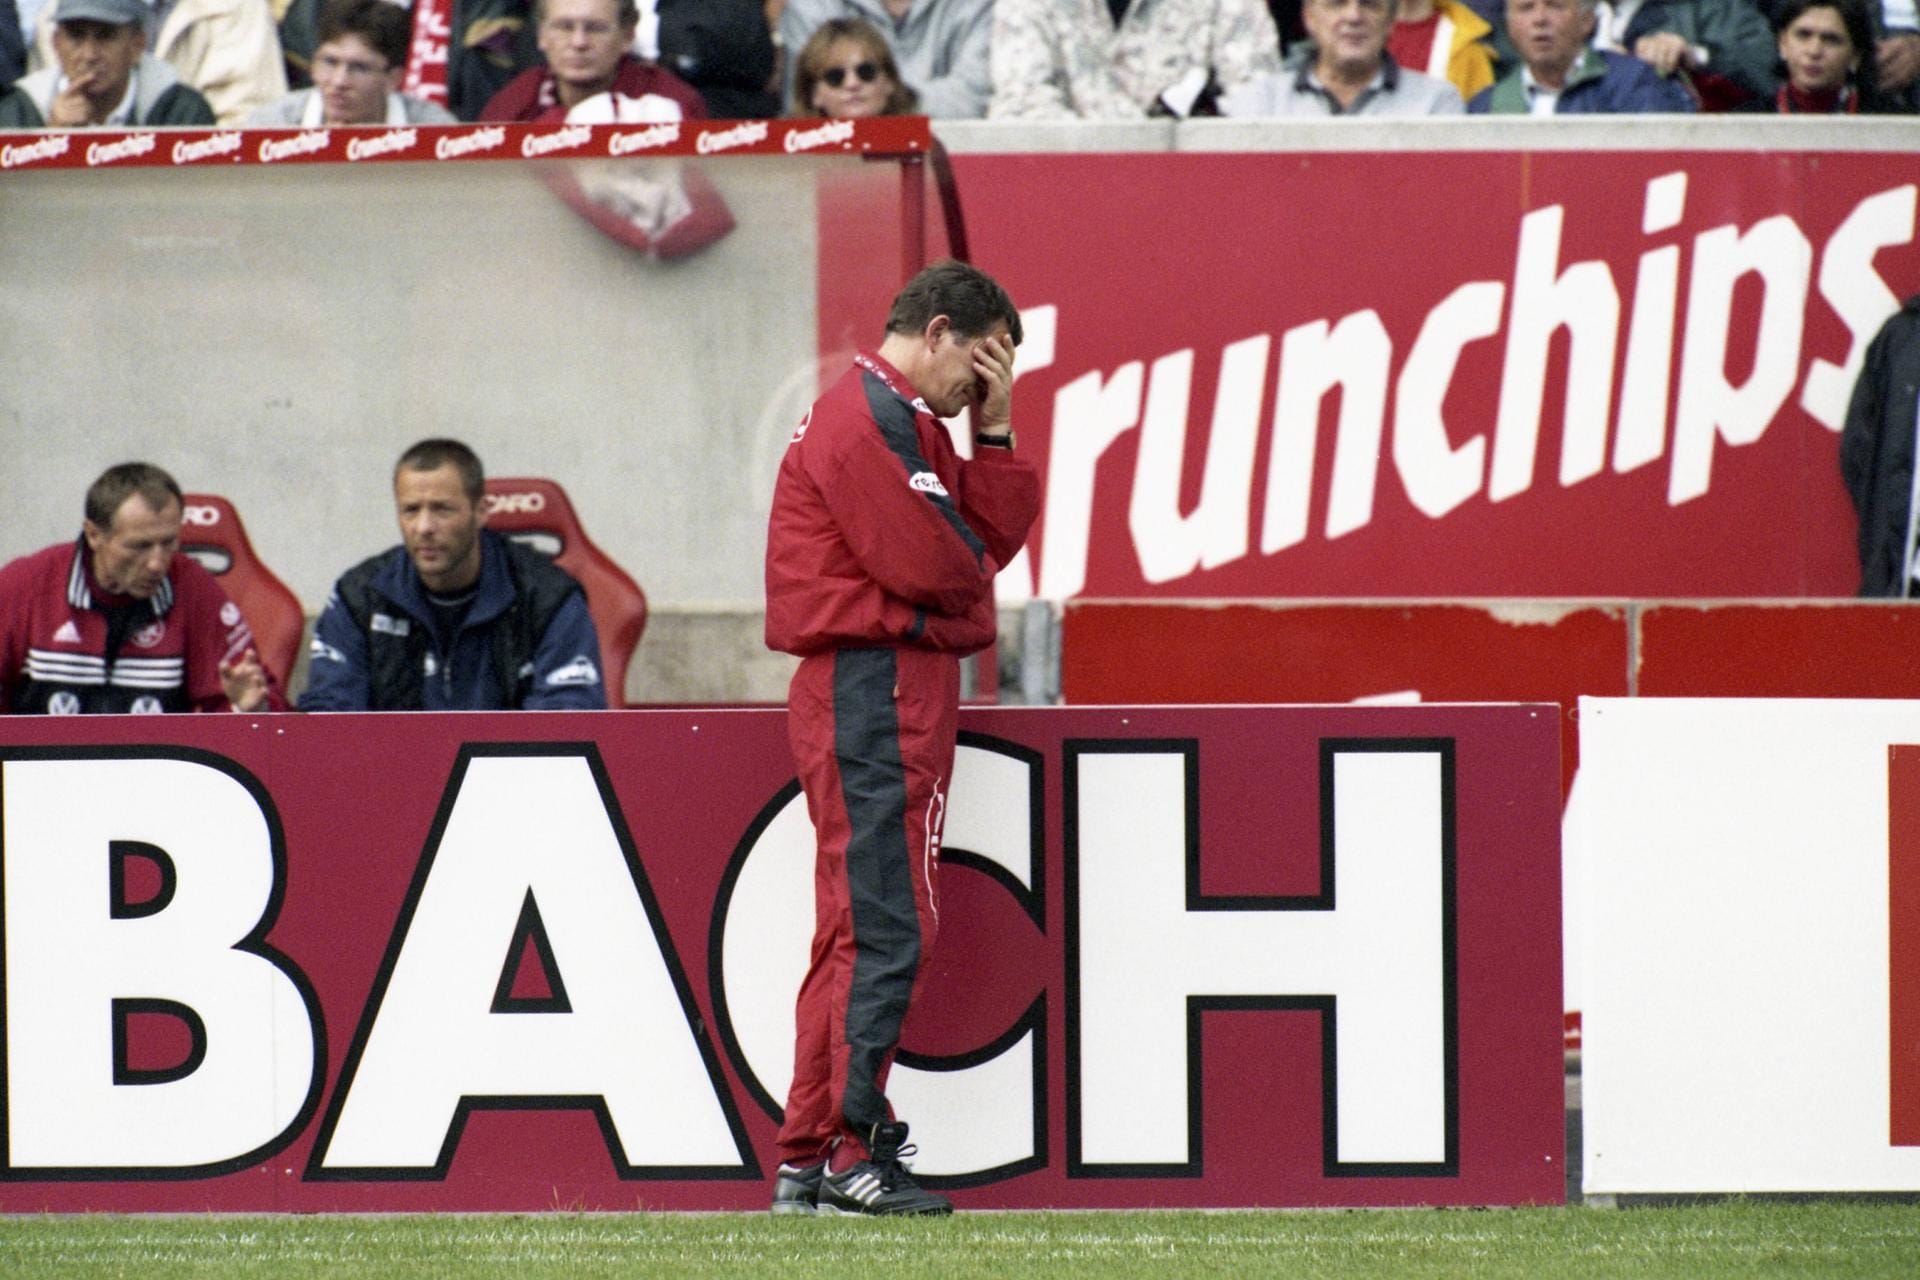 Otto Rehhagel wandte sich vom Spielfeld ab und schlug sich die Hände vors Gesicht, als ihm im September 1998 sein Fauxpas auffiel: Mit Pascal Ojigwe hatte der damalige Lautern-Trainer einen vierten Nicht-Europäer eingewechselt. Hastig versuchte er Ägypter Hany Ramzy mit einer eingeflüsterten, vorgetäuschten Verletzung vom Feld zu nehmen. Gegner Bochum verzichtete jedoch auf einen Protest: die Gäste aus dem Ruhrpott hatten ohnehin 3:2 gewonnen.